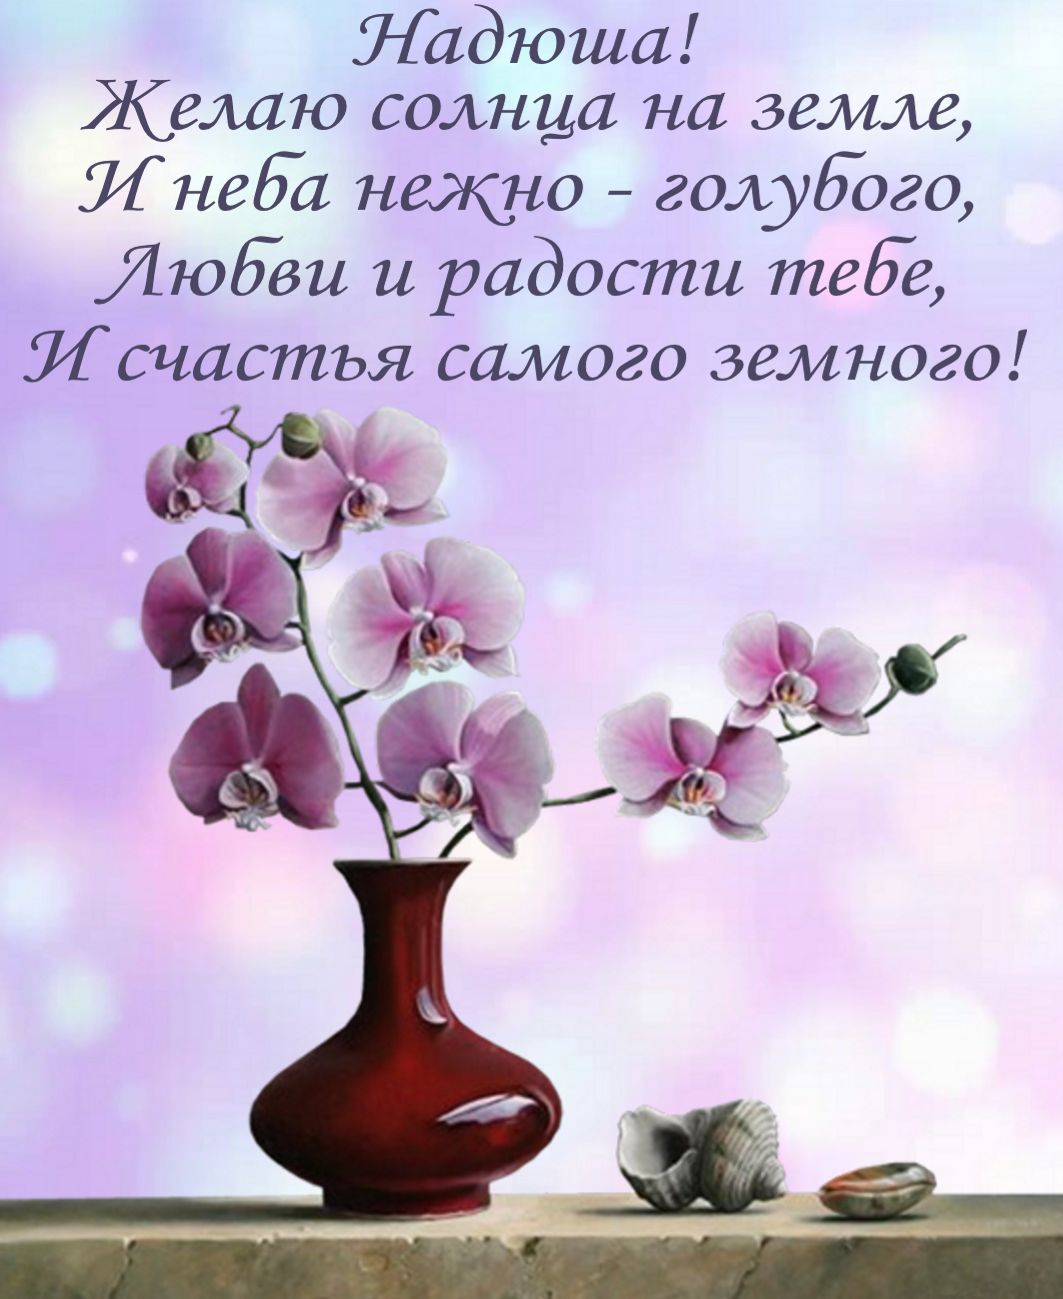 открытка - красивый цветок в вазе и поздравление Надюше